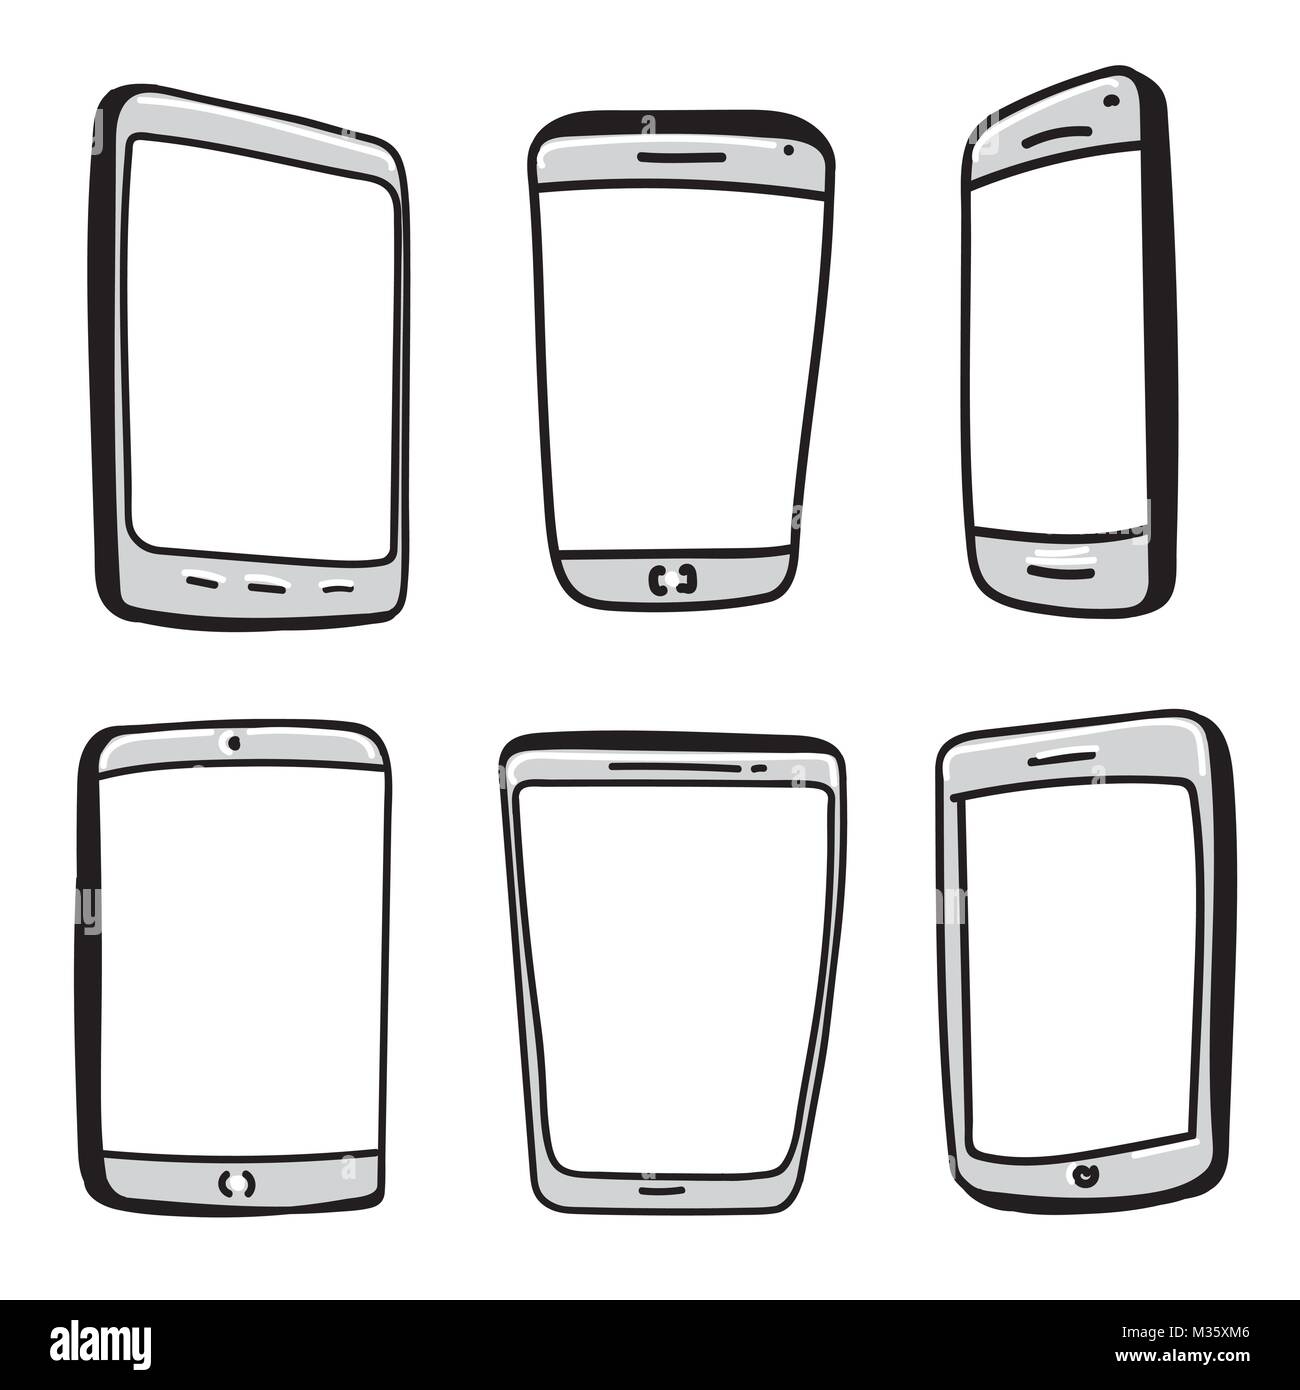 Telefono cellulare e tavoletta digitale disegnati a mano Vector Icon Set. Illustrazione Vettoriale